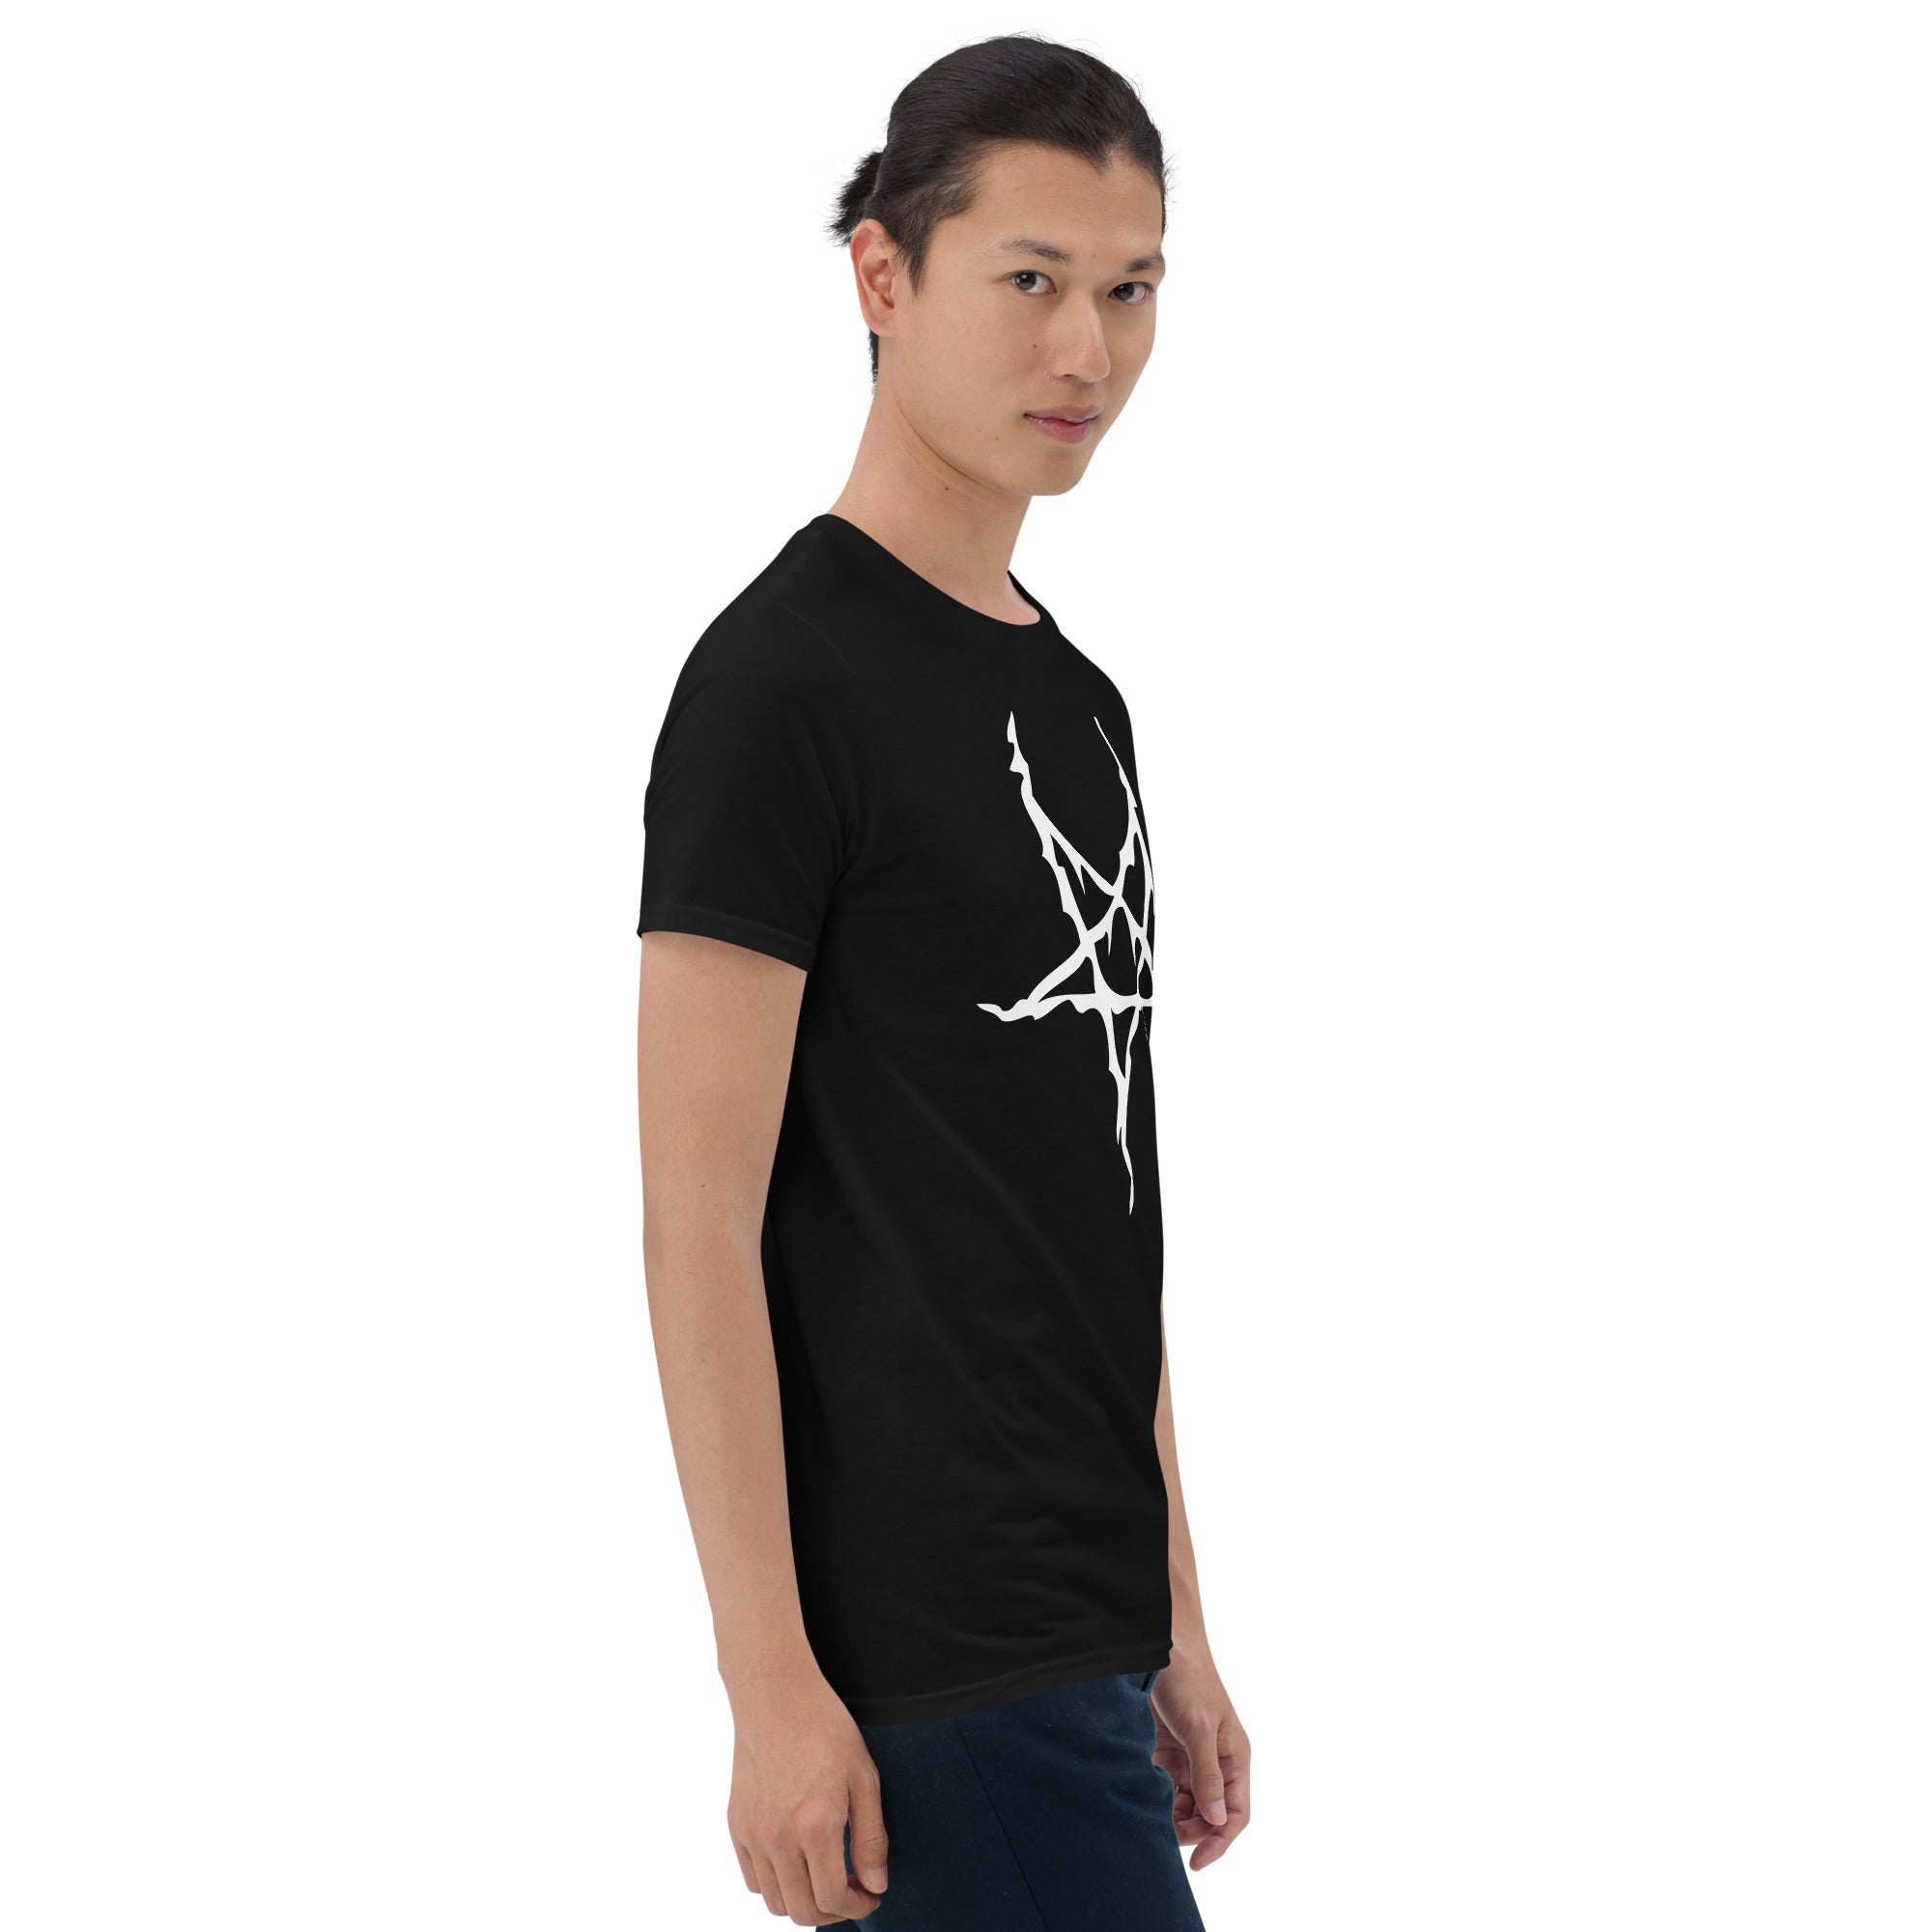 White Melting Inverted Pentagram Black Metal Style Men's Short-Sleeve T-Shirt